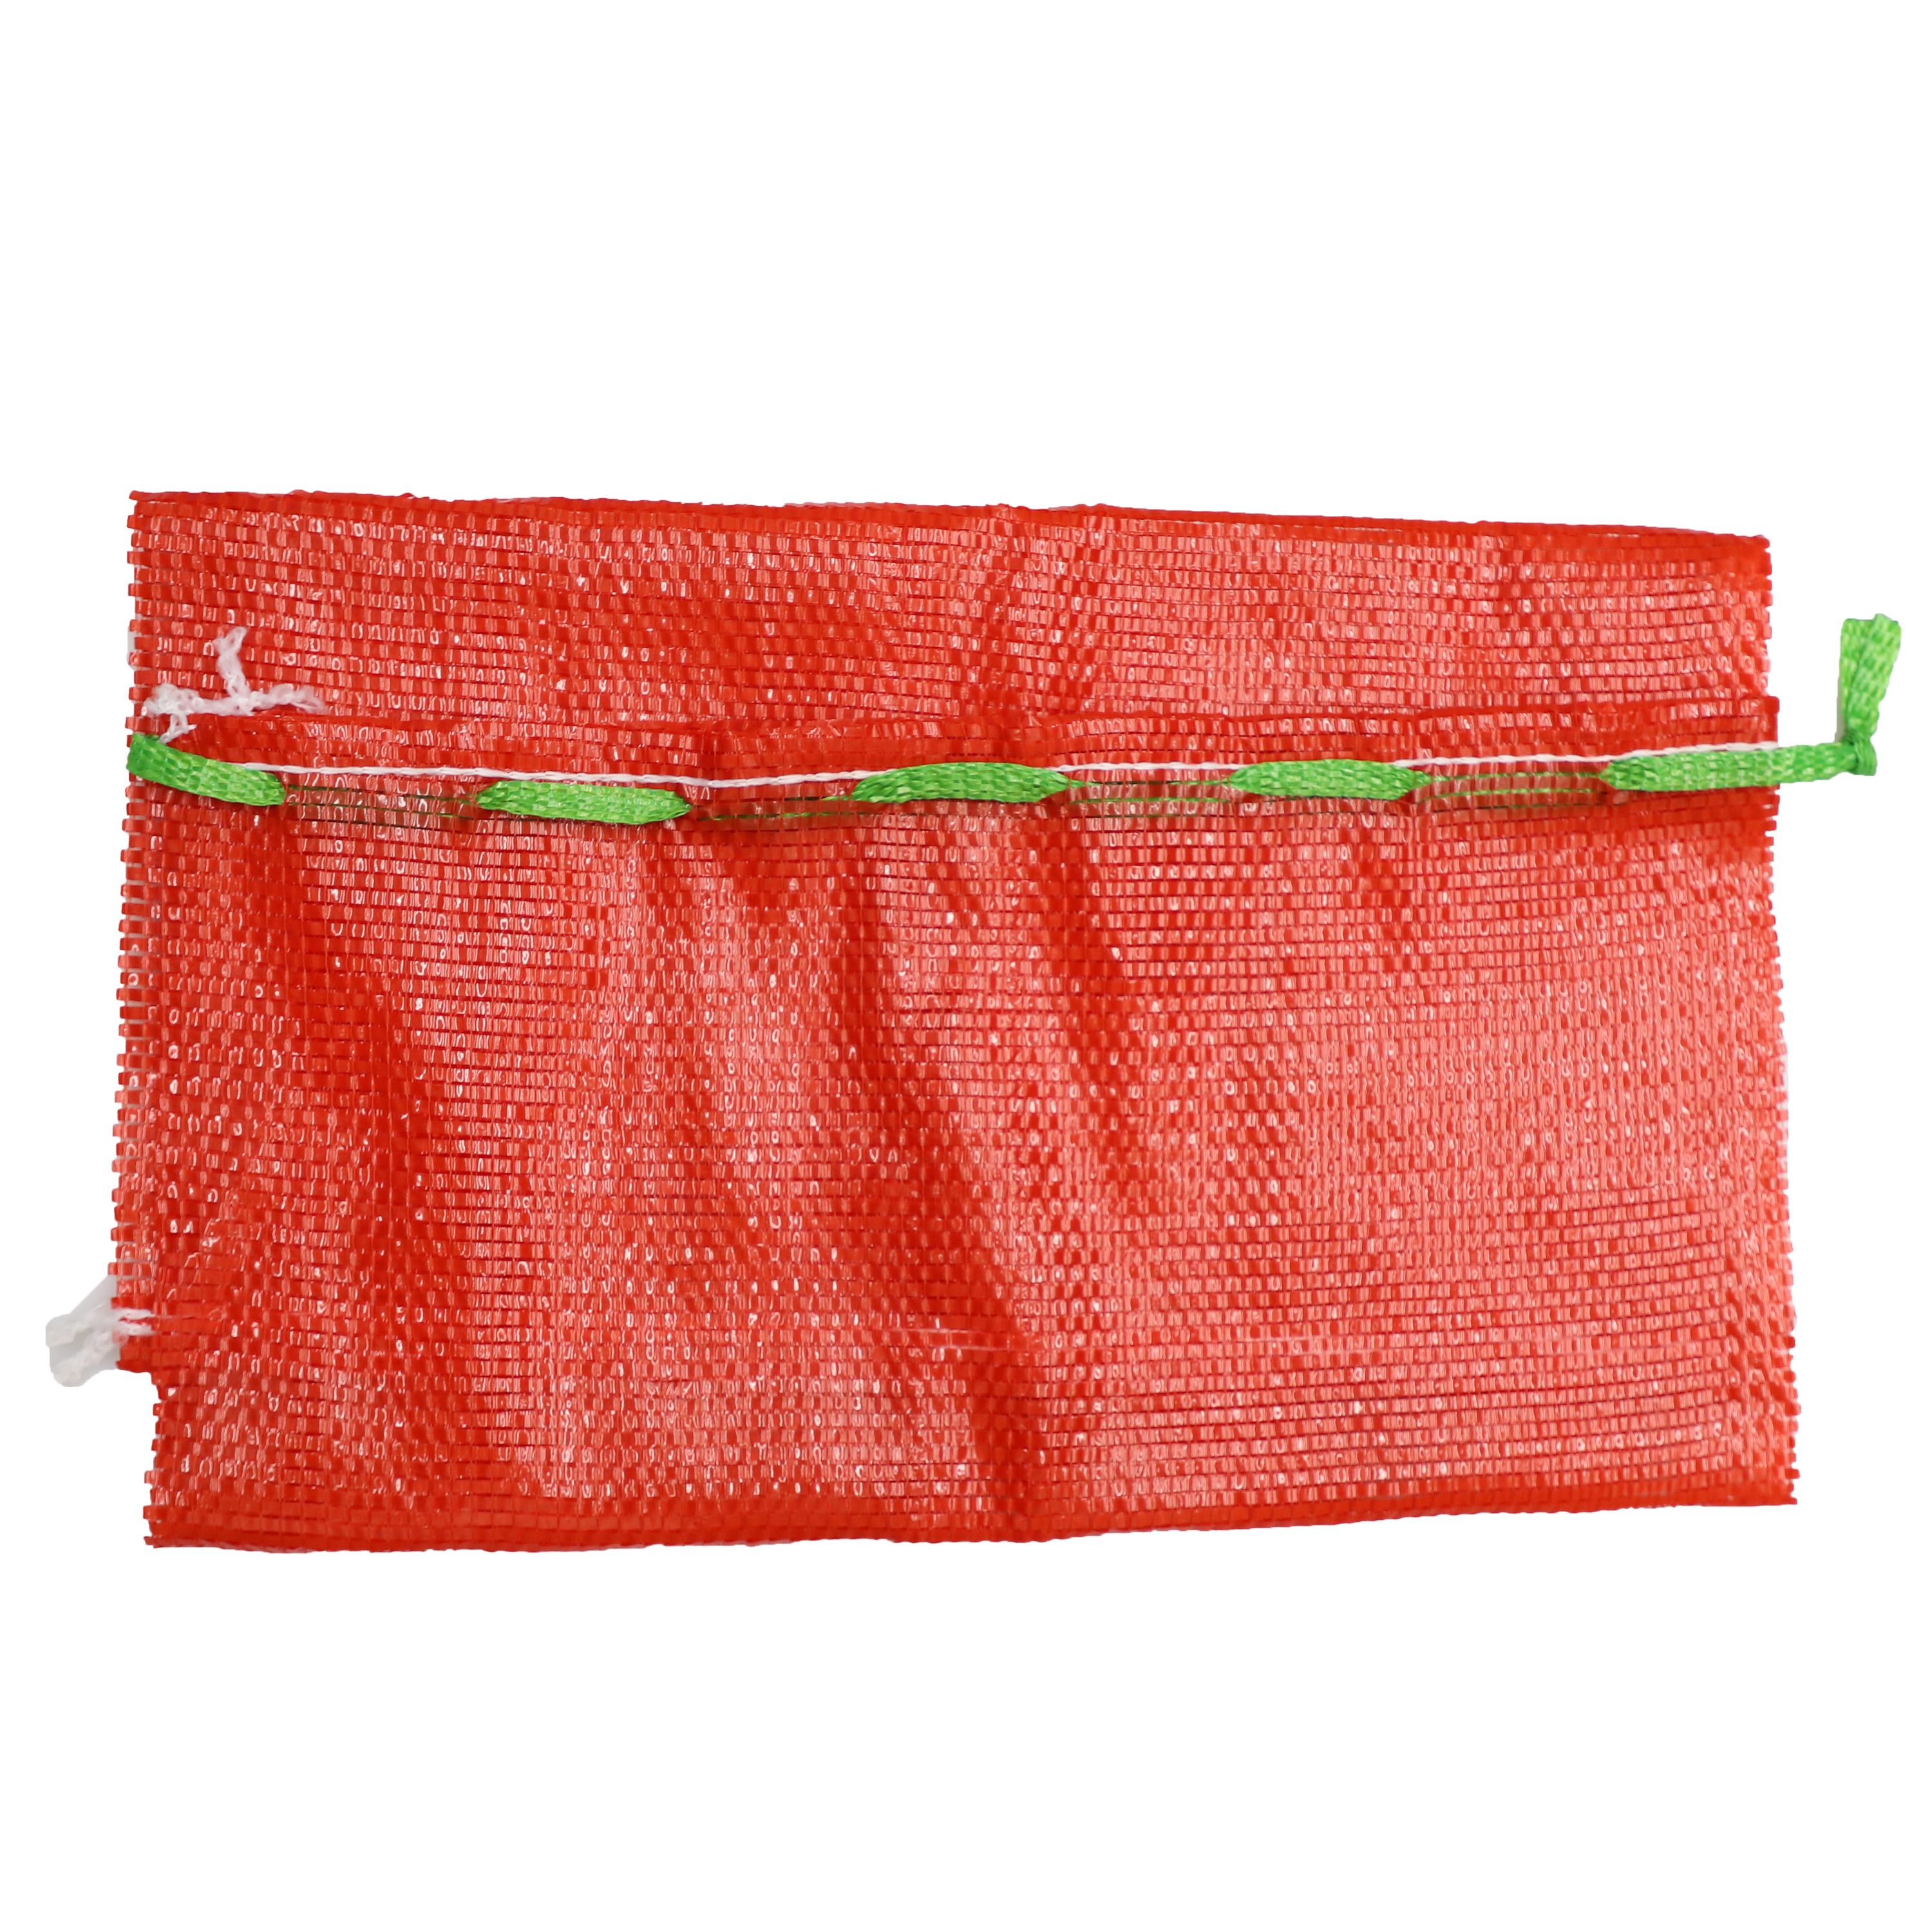 可重复使用的 pp 管状拉绳网状网袋，用于水果和蔬菜